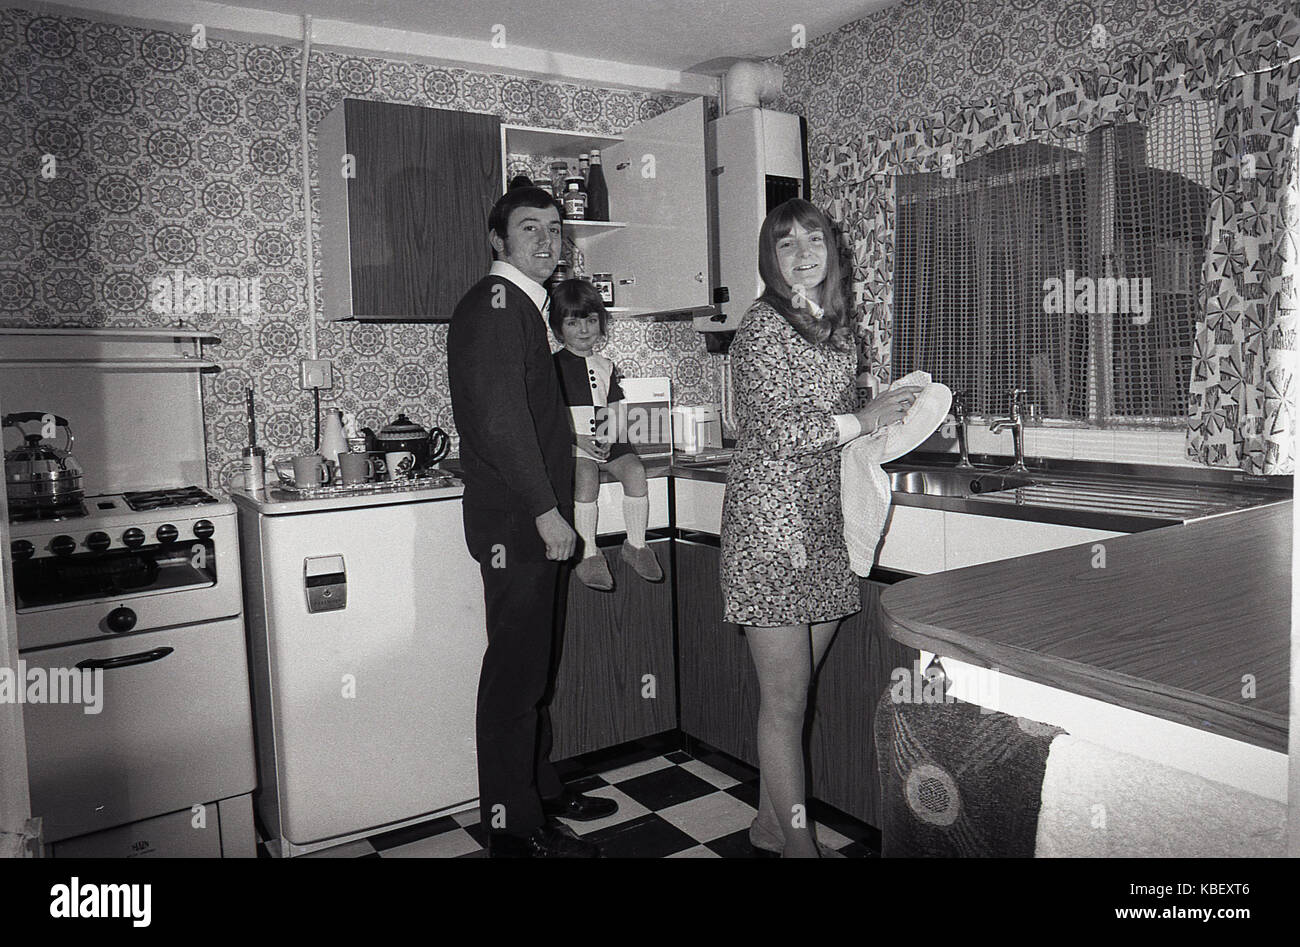 1972, historiques, mari et femme avec enfant dans la cuisine de leur conseil, récemment rénové, appartement rue de Baildon, Deptford, London, SE8, Angleterre, Royaume-Uni. Banque D'Images